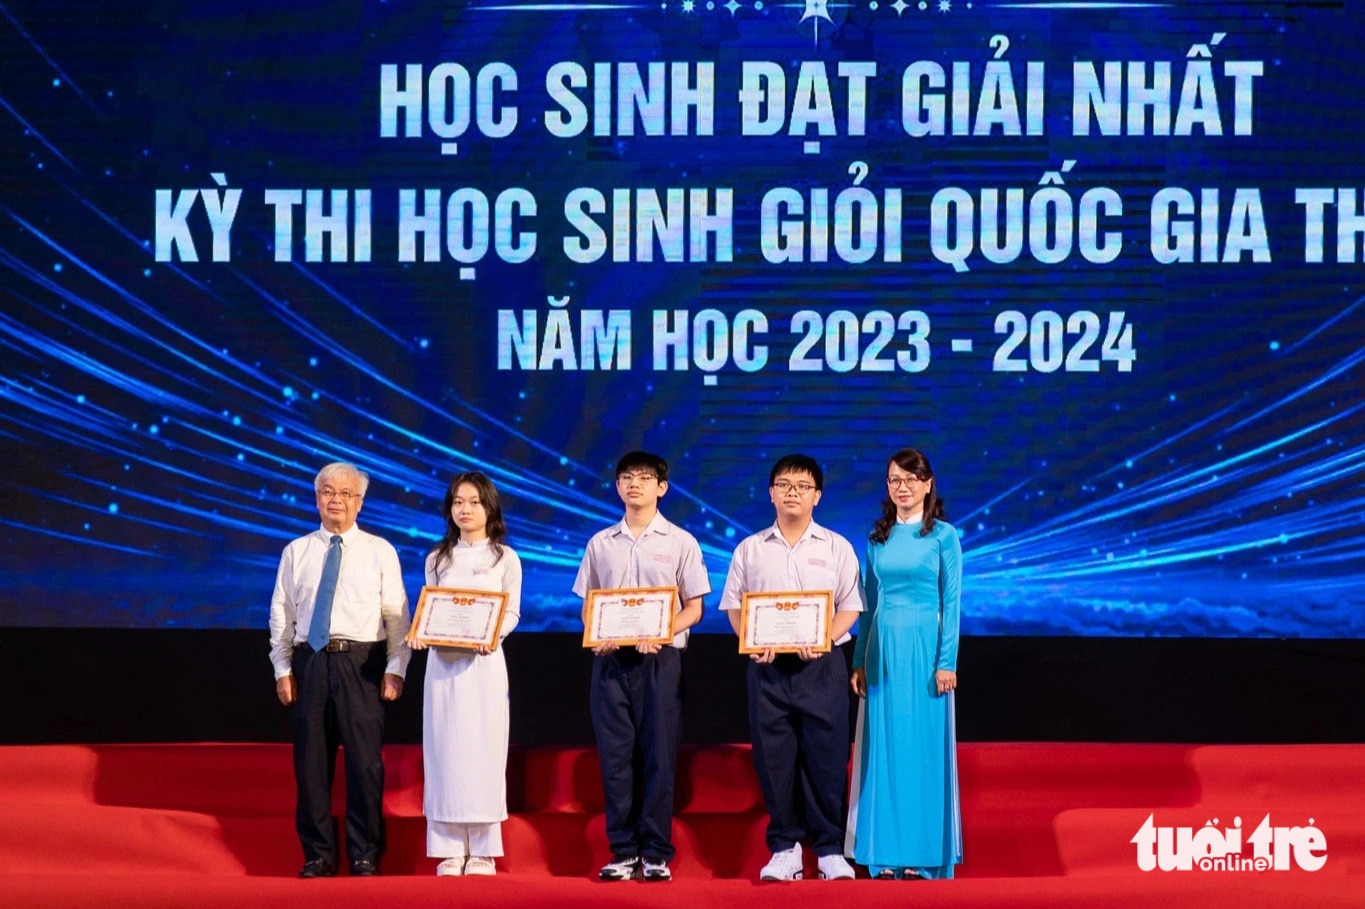 Khen thưởng 3 học sinh giải nhất kỳ thi học sinh giỏi quốc gia THPT năm nay. Trong đó bạn Nguyễn Hồng Anh, giải nhất và thủ khoa toàn quốc môn ngữ văn (thứ hai, từ trái sang) - Ảnh: CÔNG TRIỆU